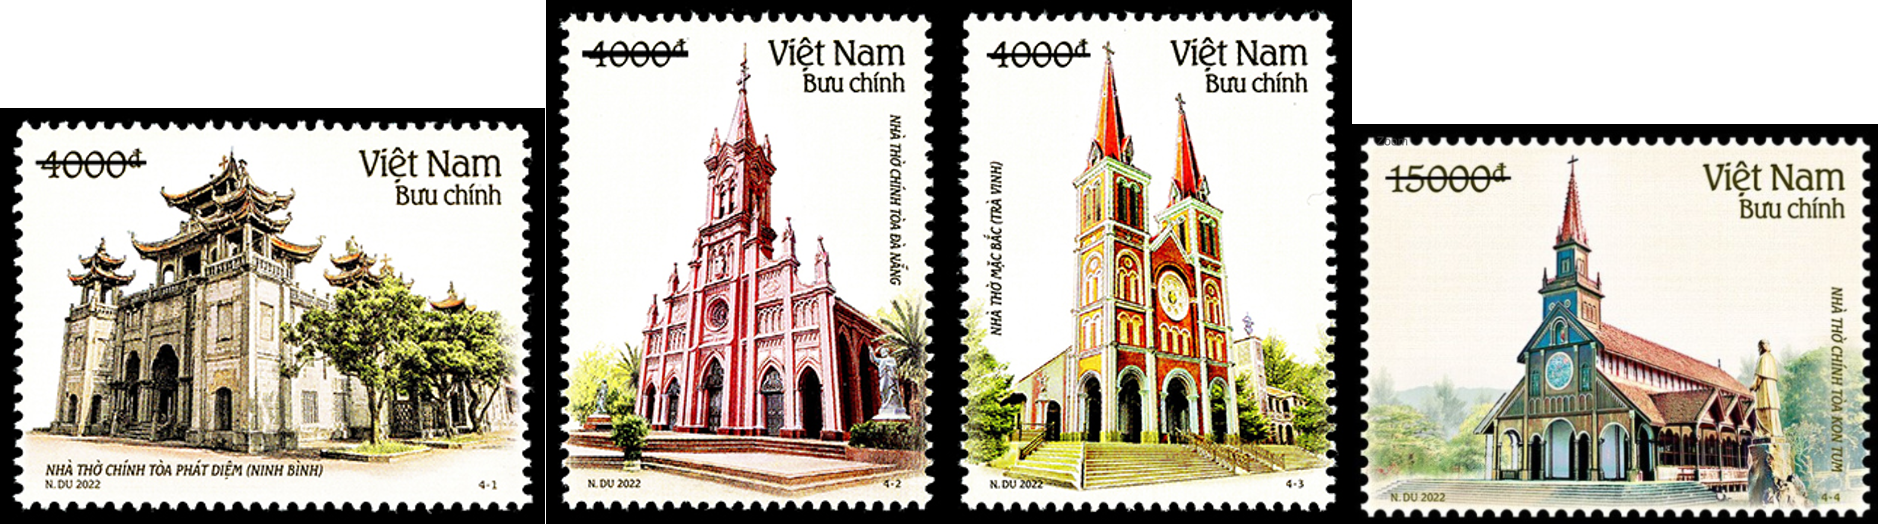 Kiến trúc nhà thờ Việt Nam trên tem bưu chính Việt Nam - Ảnh 2.